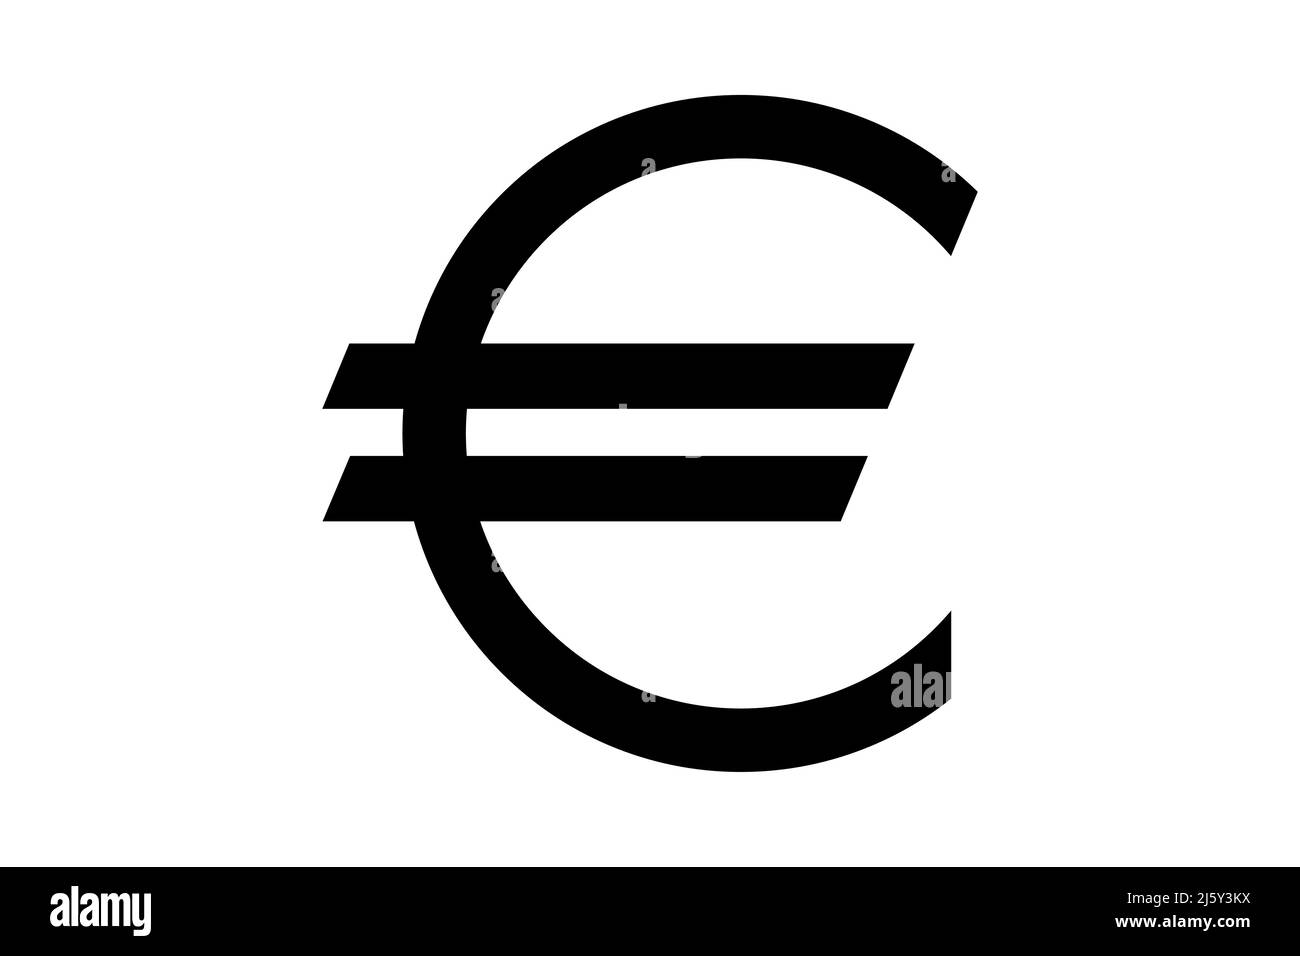 Euro icon symbol simple design Stock Vector